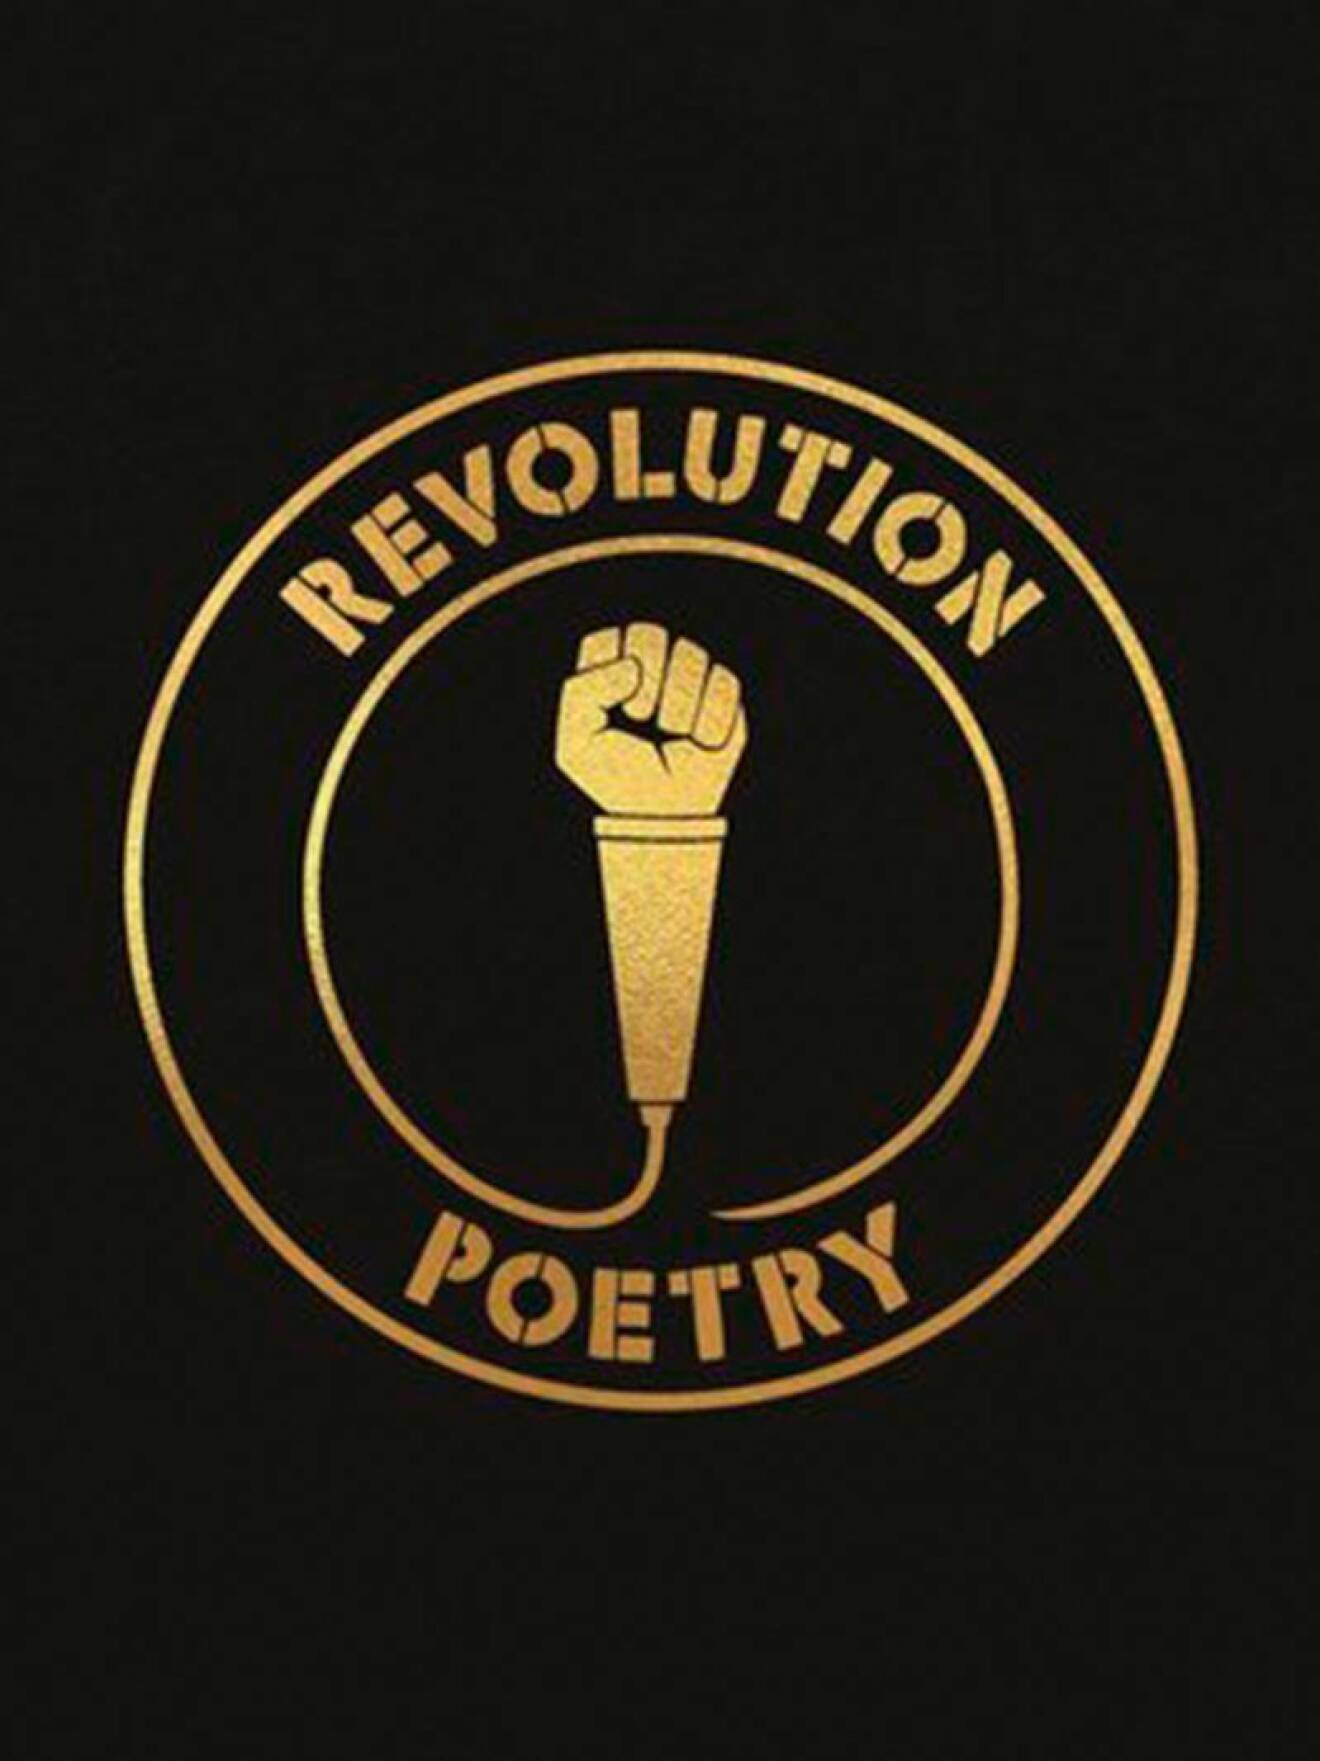 Bokomslag till Revolution poetry, svart bakrund med boktitel skriven i guld som omsluter en mikrofon med en höjd knytnäve.